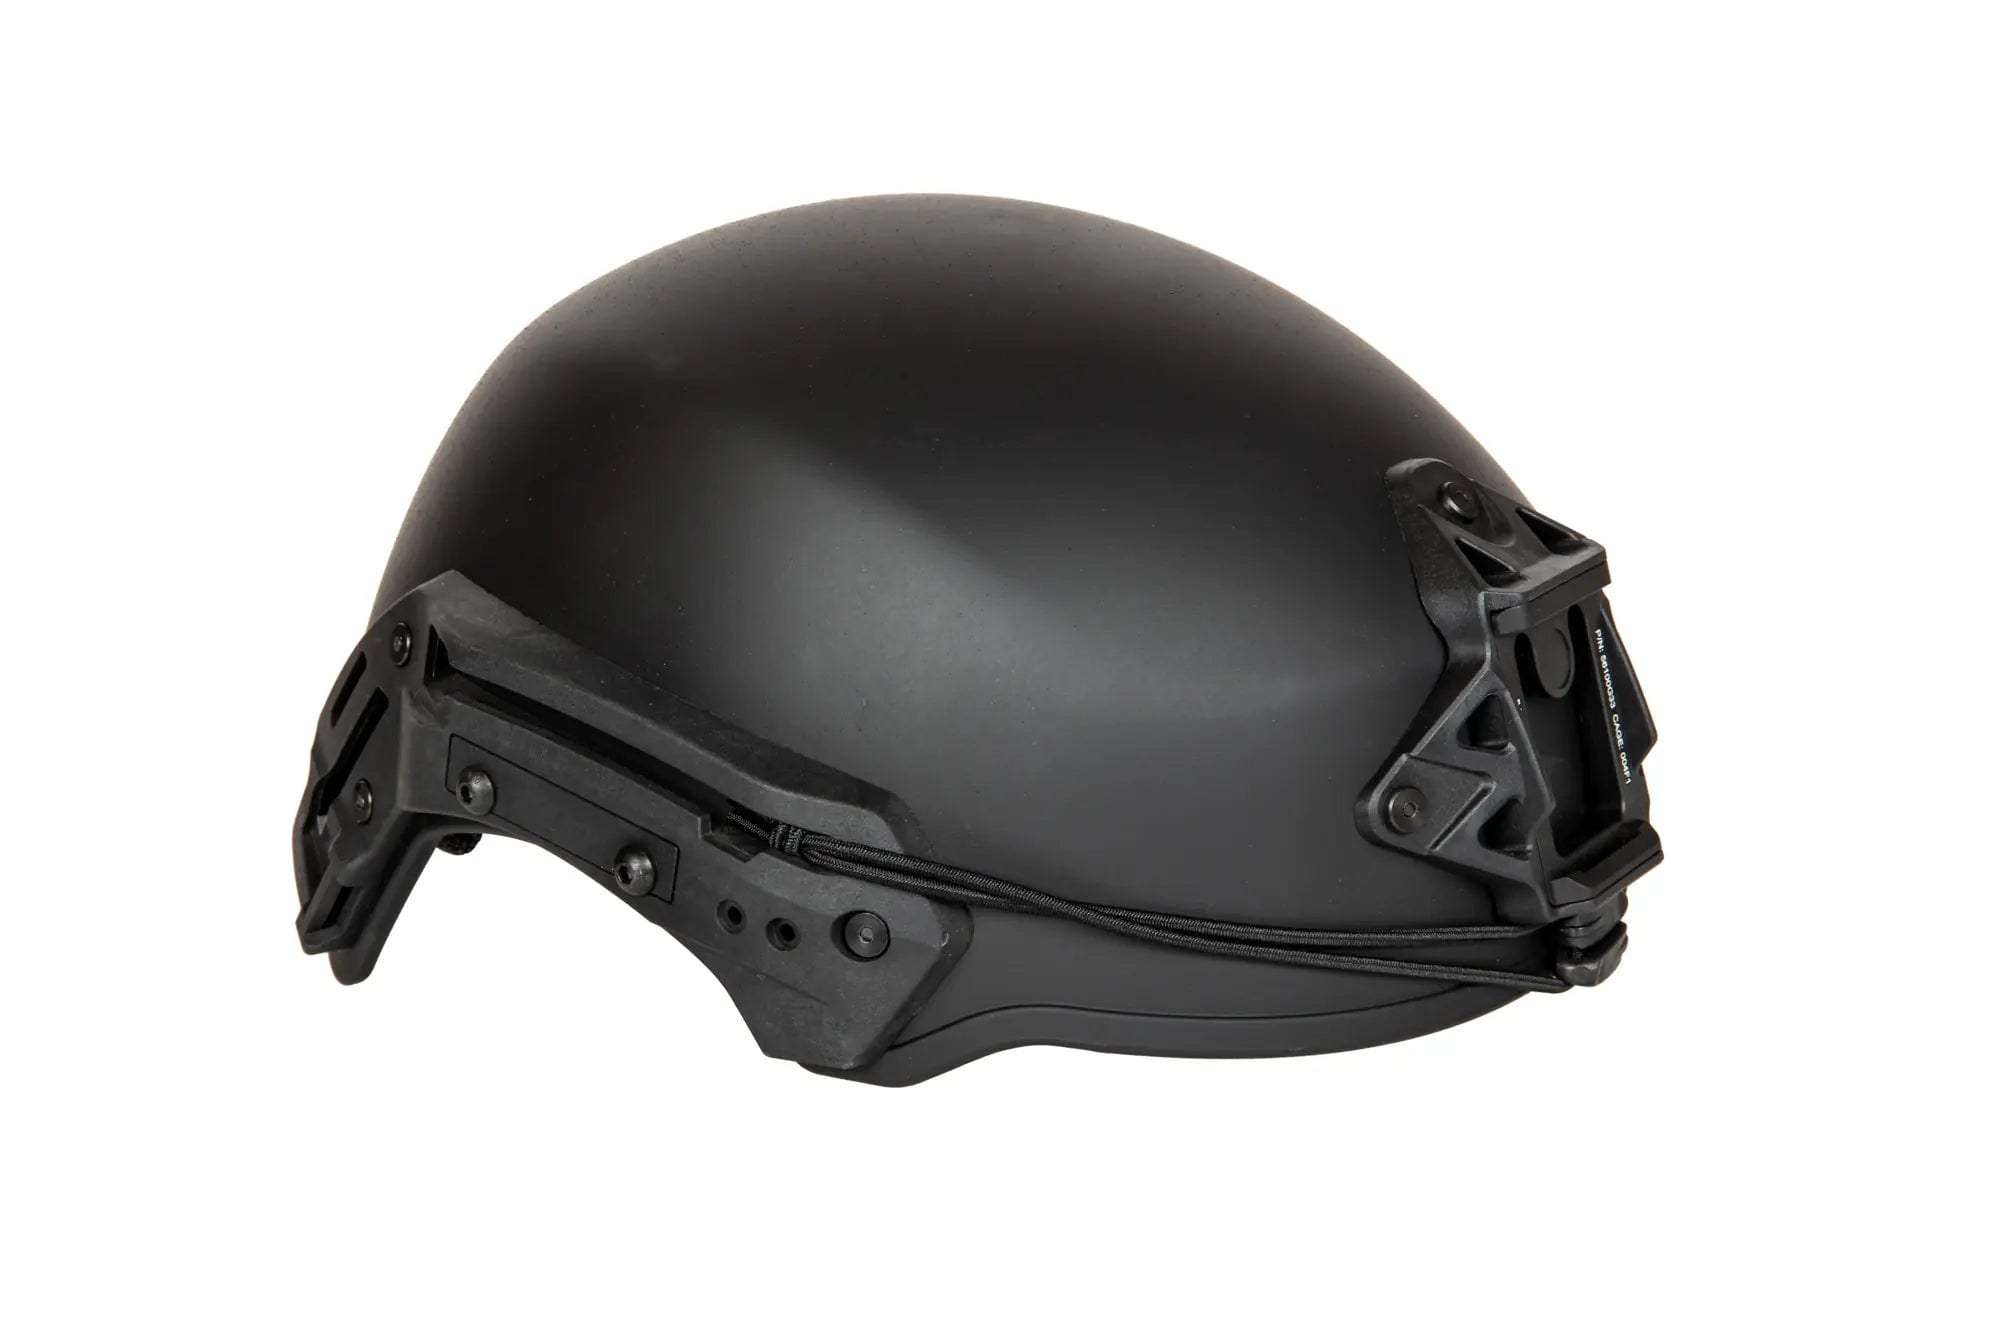 EXFIL helmet (L/XL) - Black